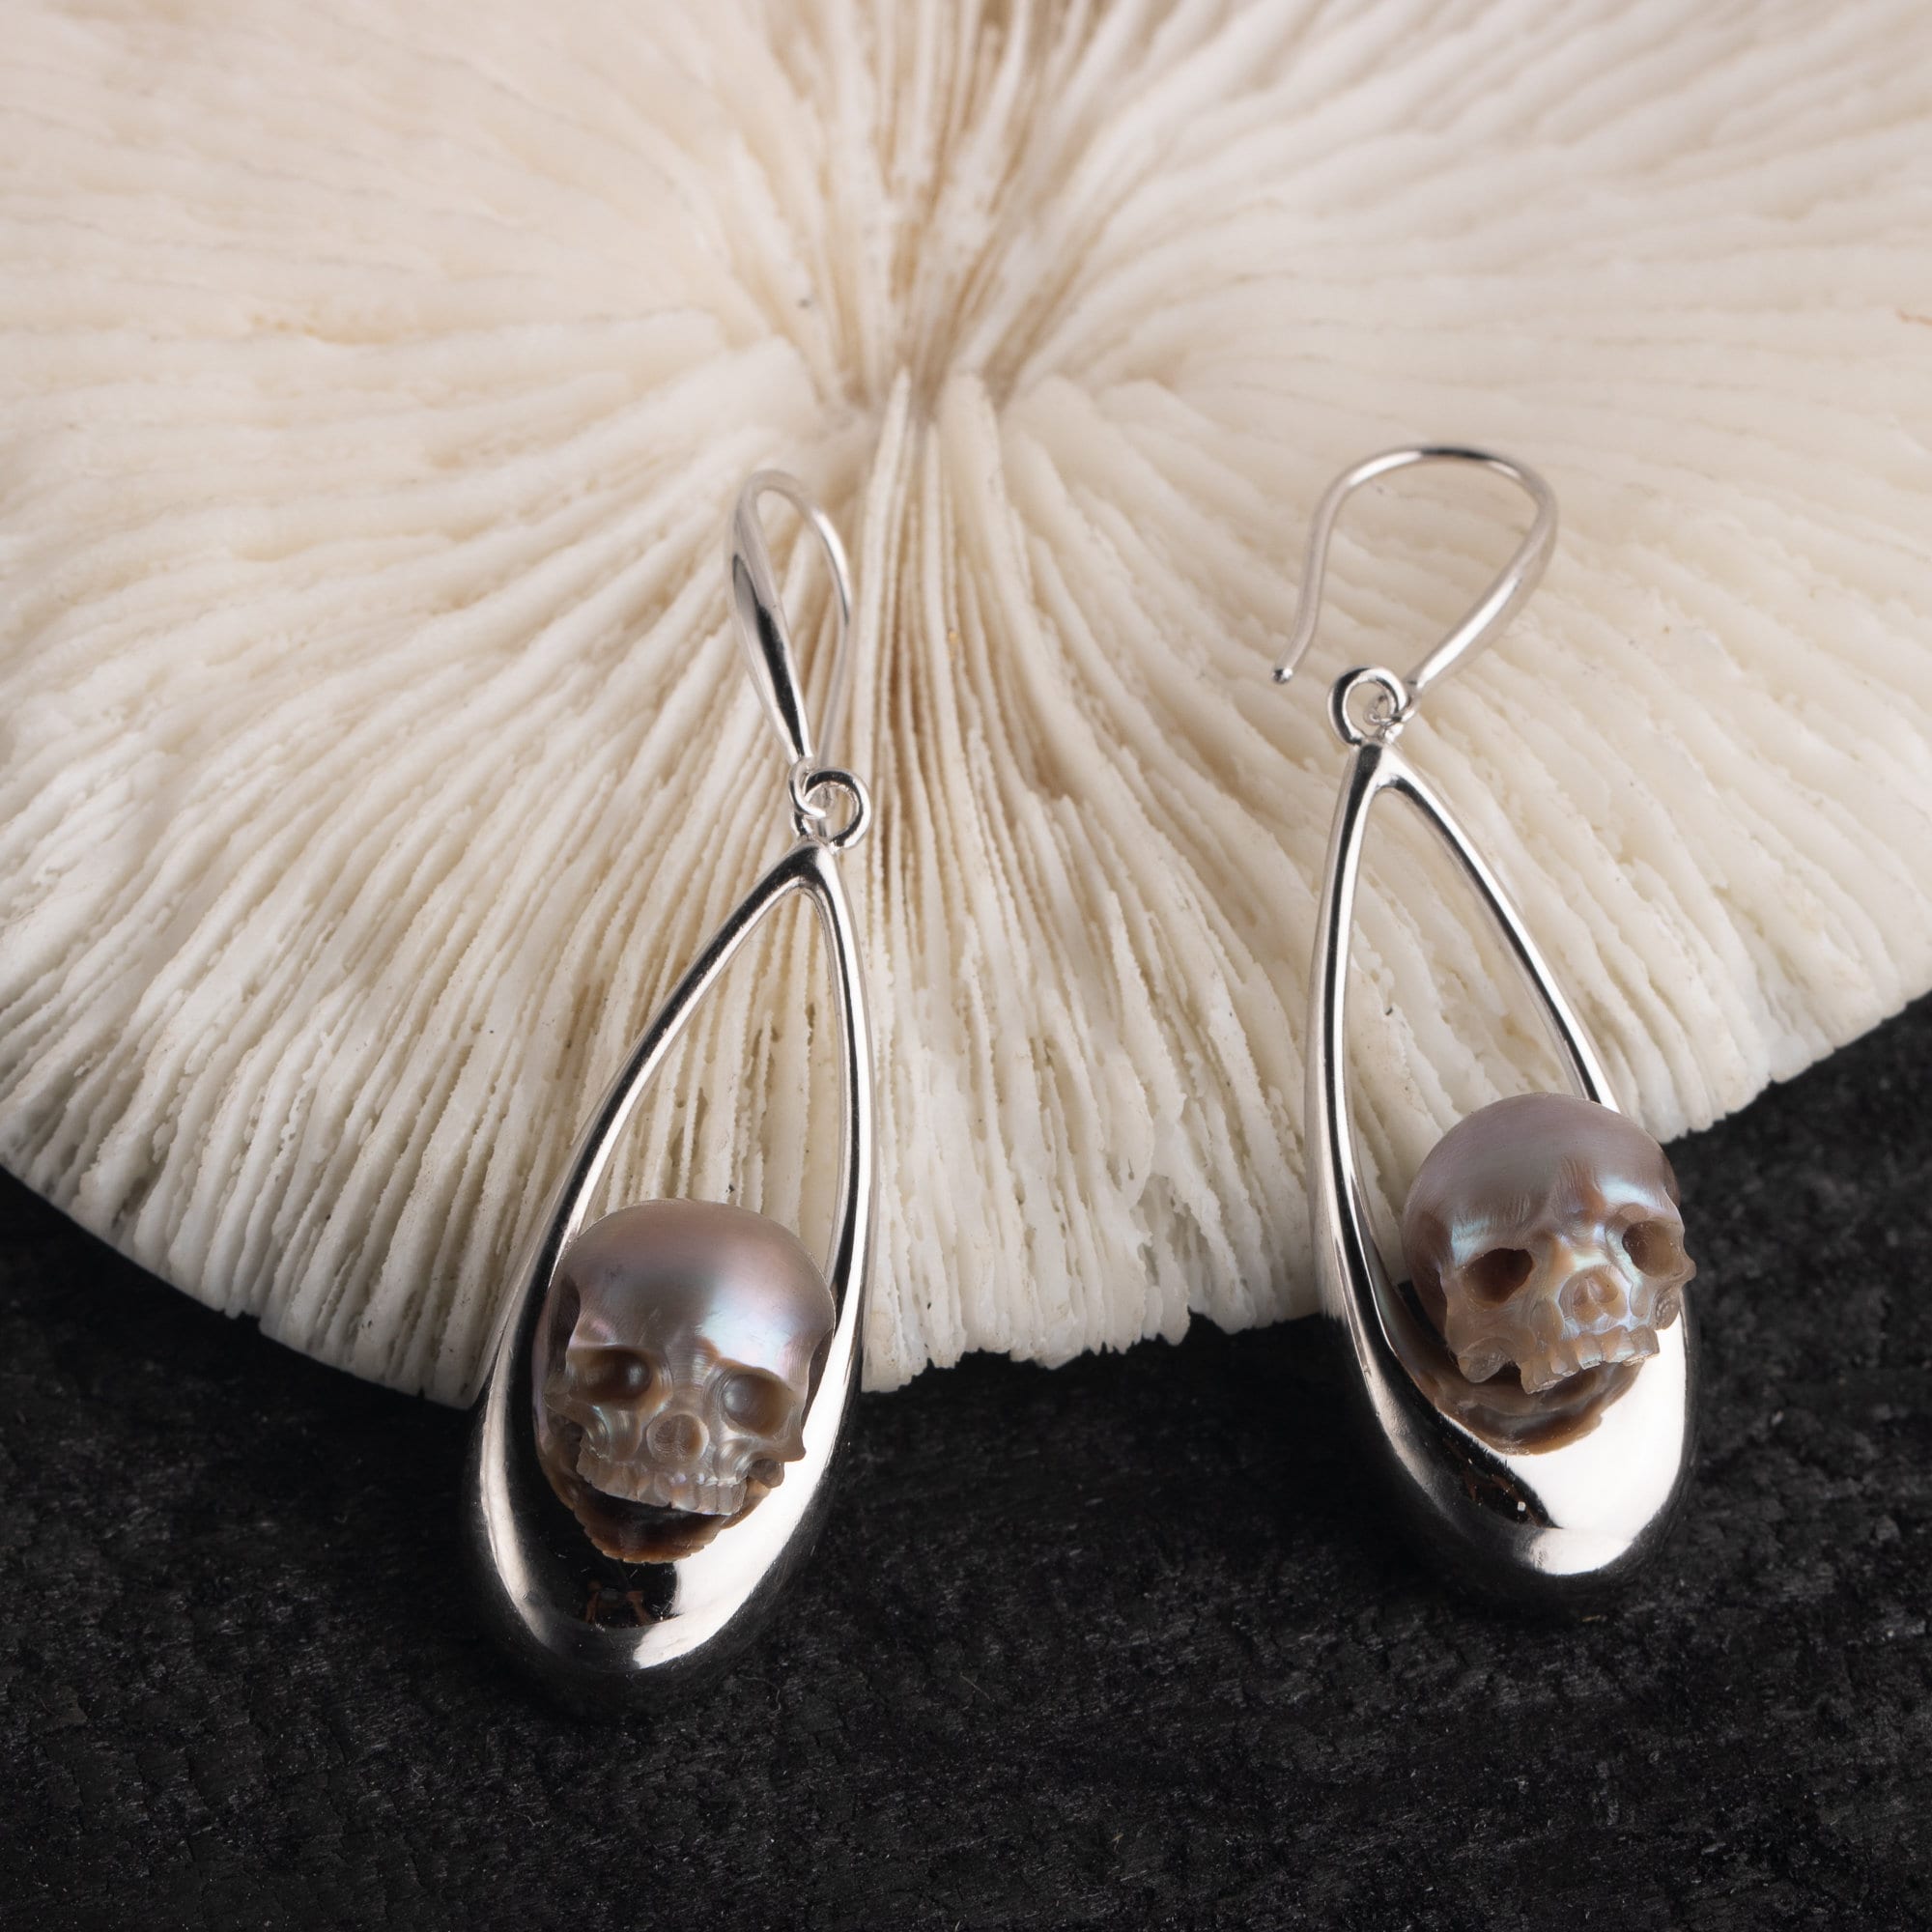 skull carved pearl earrings for women drop shape freshwater pearl earrings gift for women mother of pearl handmade elegant earrings.jpg